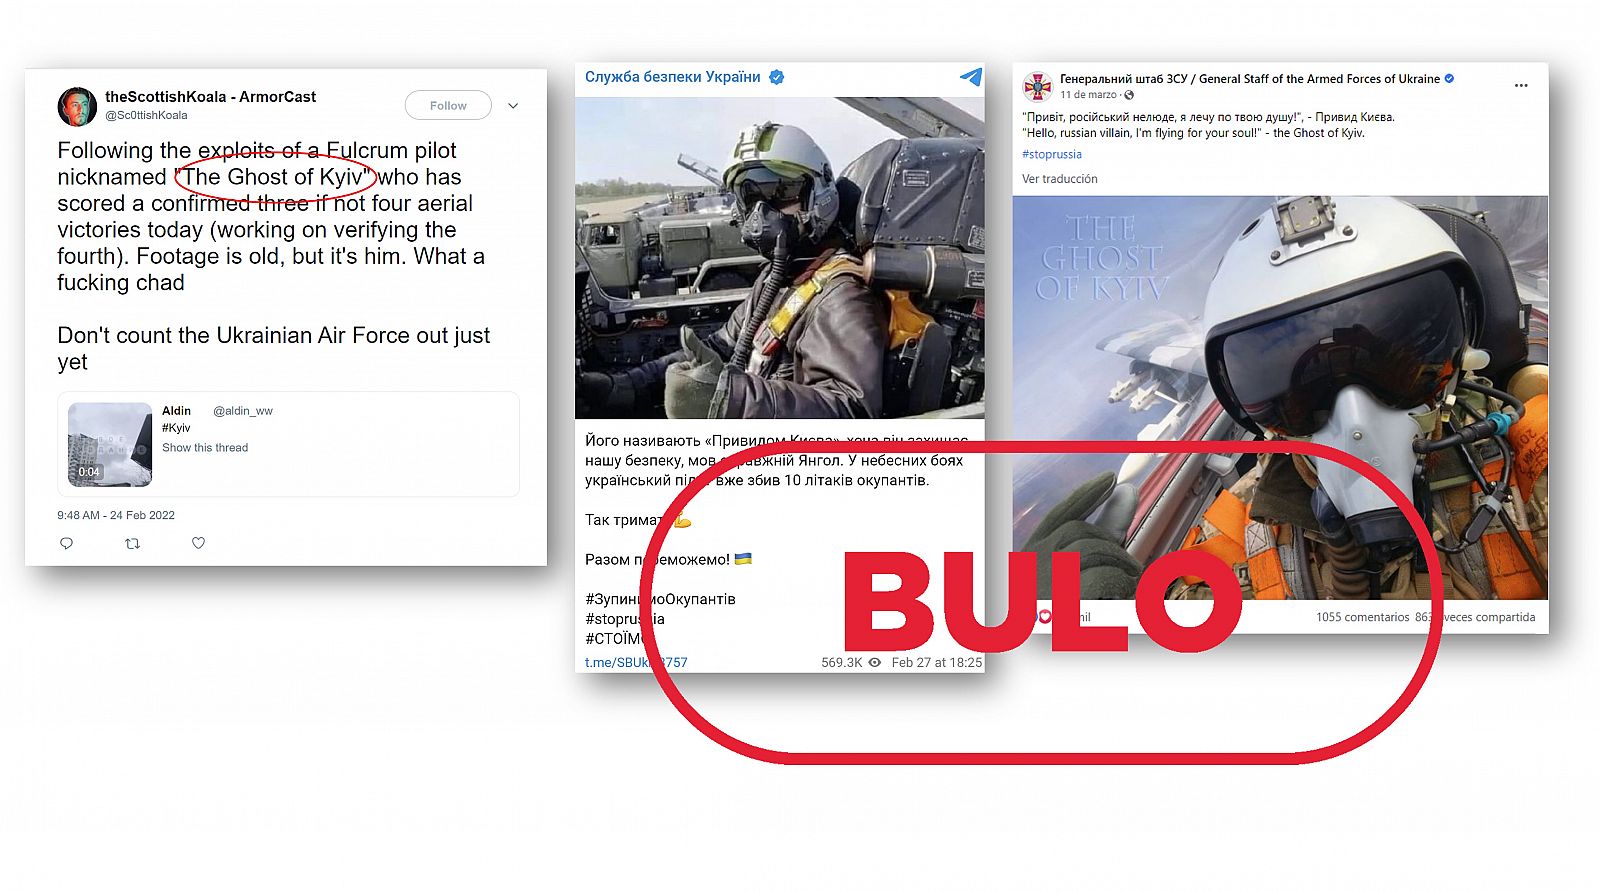 Mensajes oficiales apuntalan el bulo del Fantasma de Kiev con sello Bulo